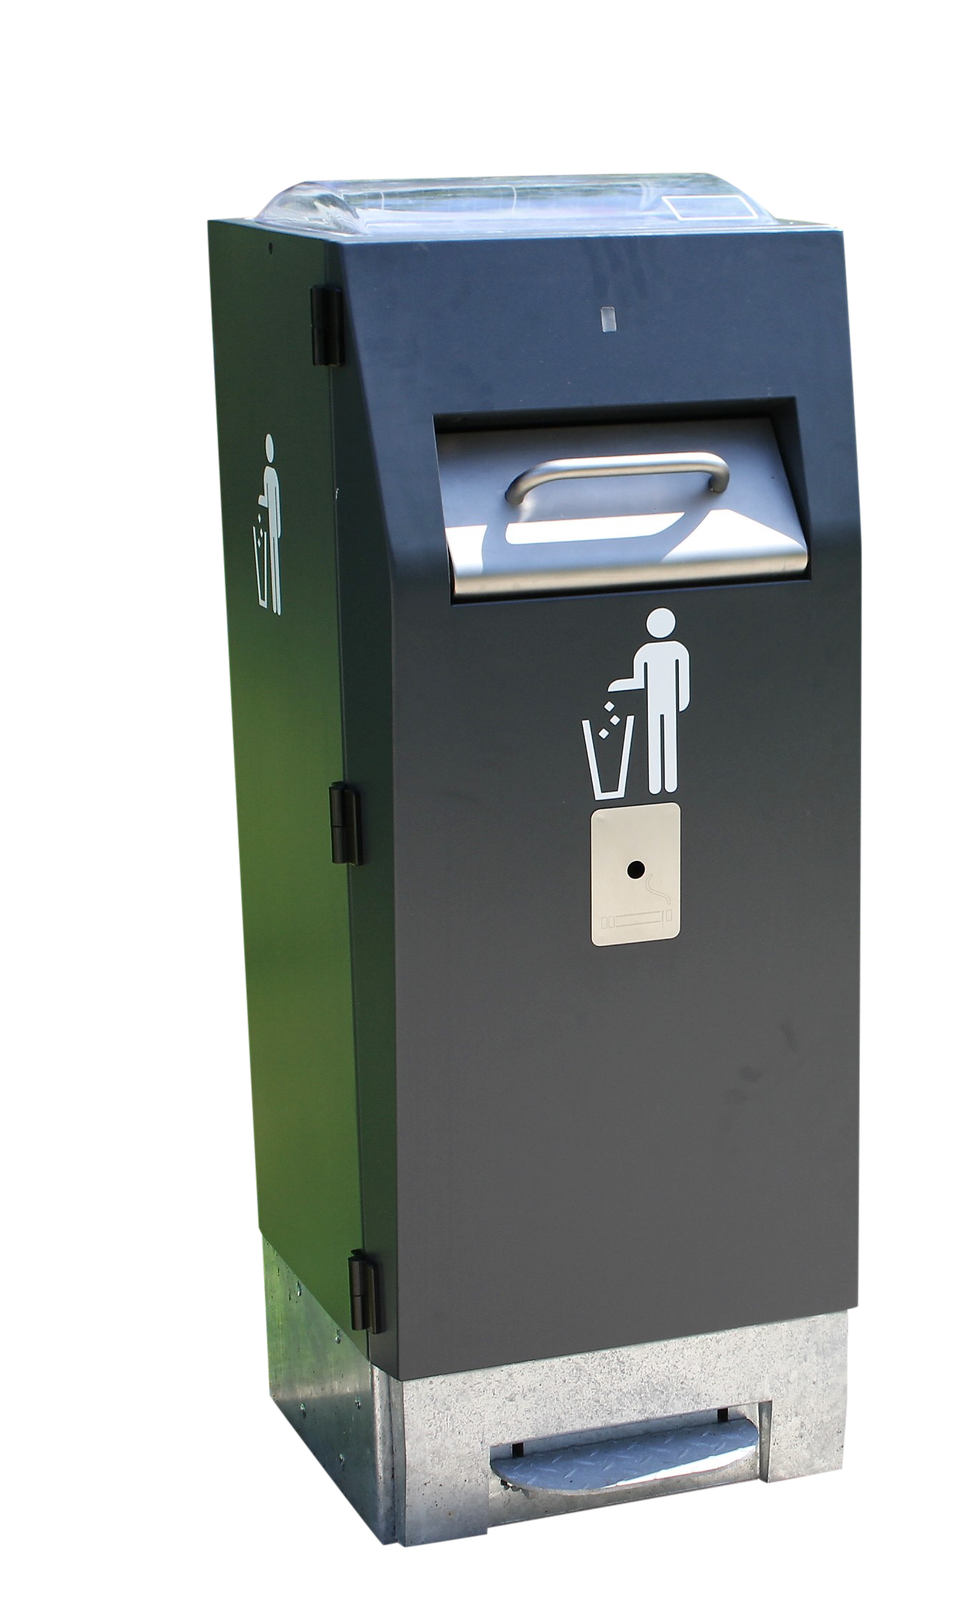 Smart bins for waste management